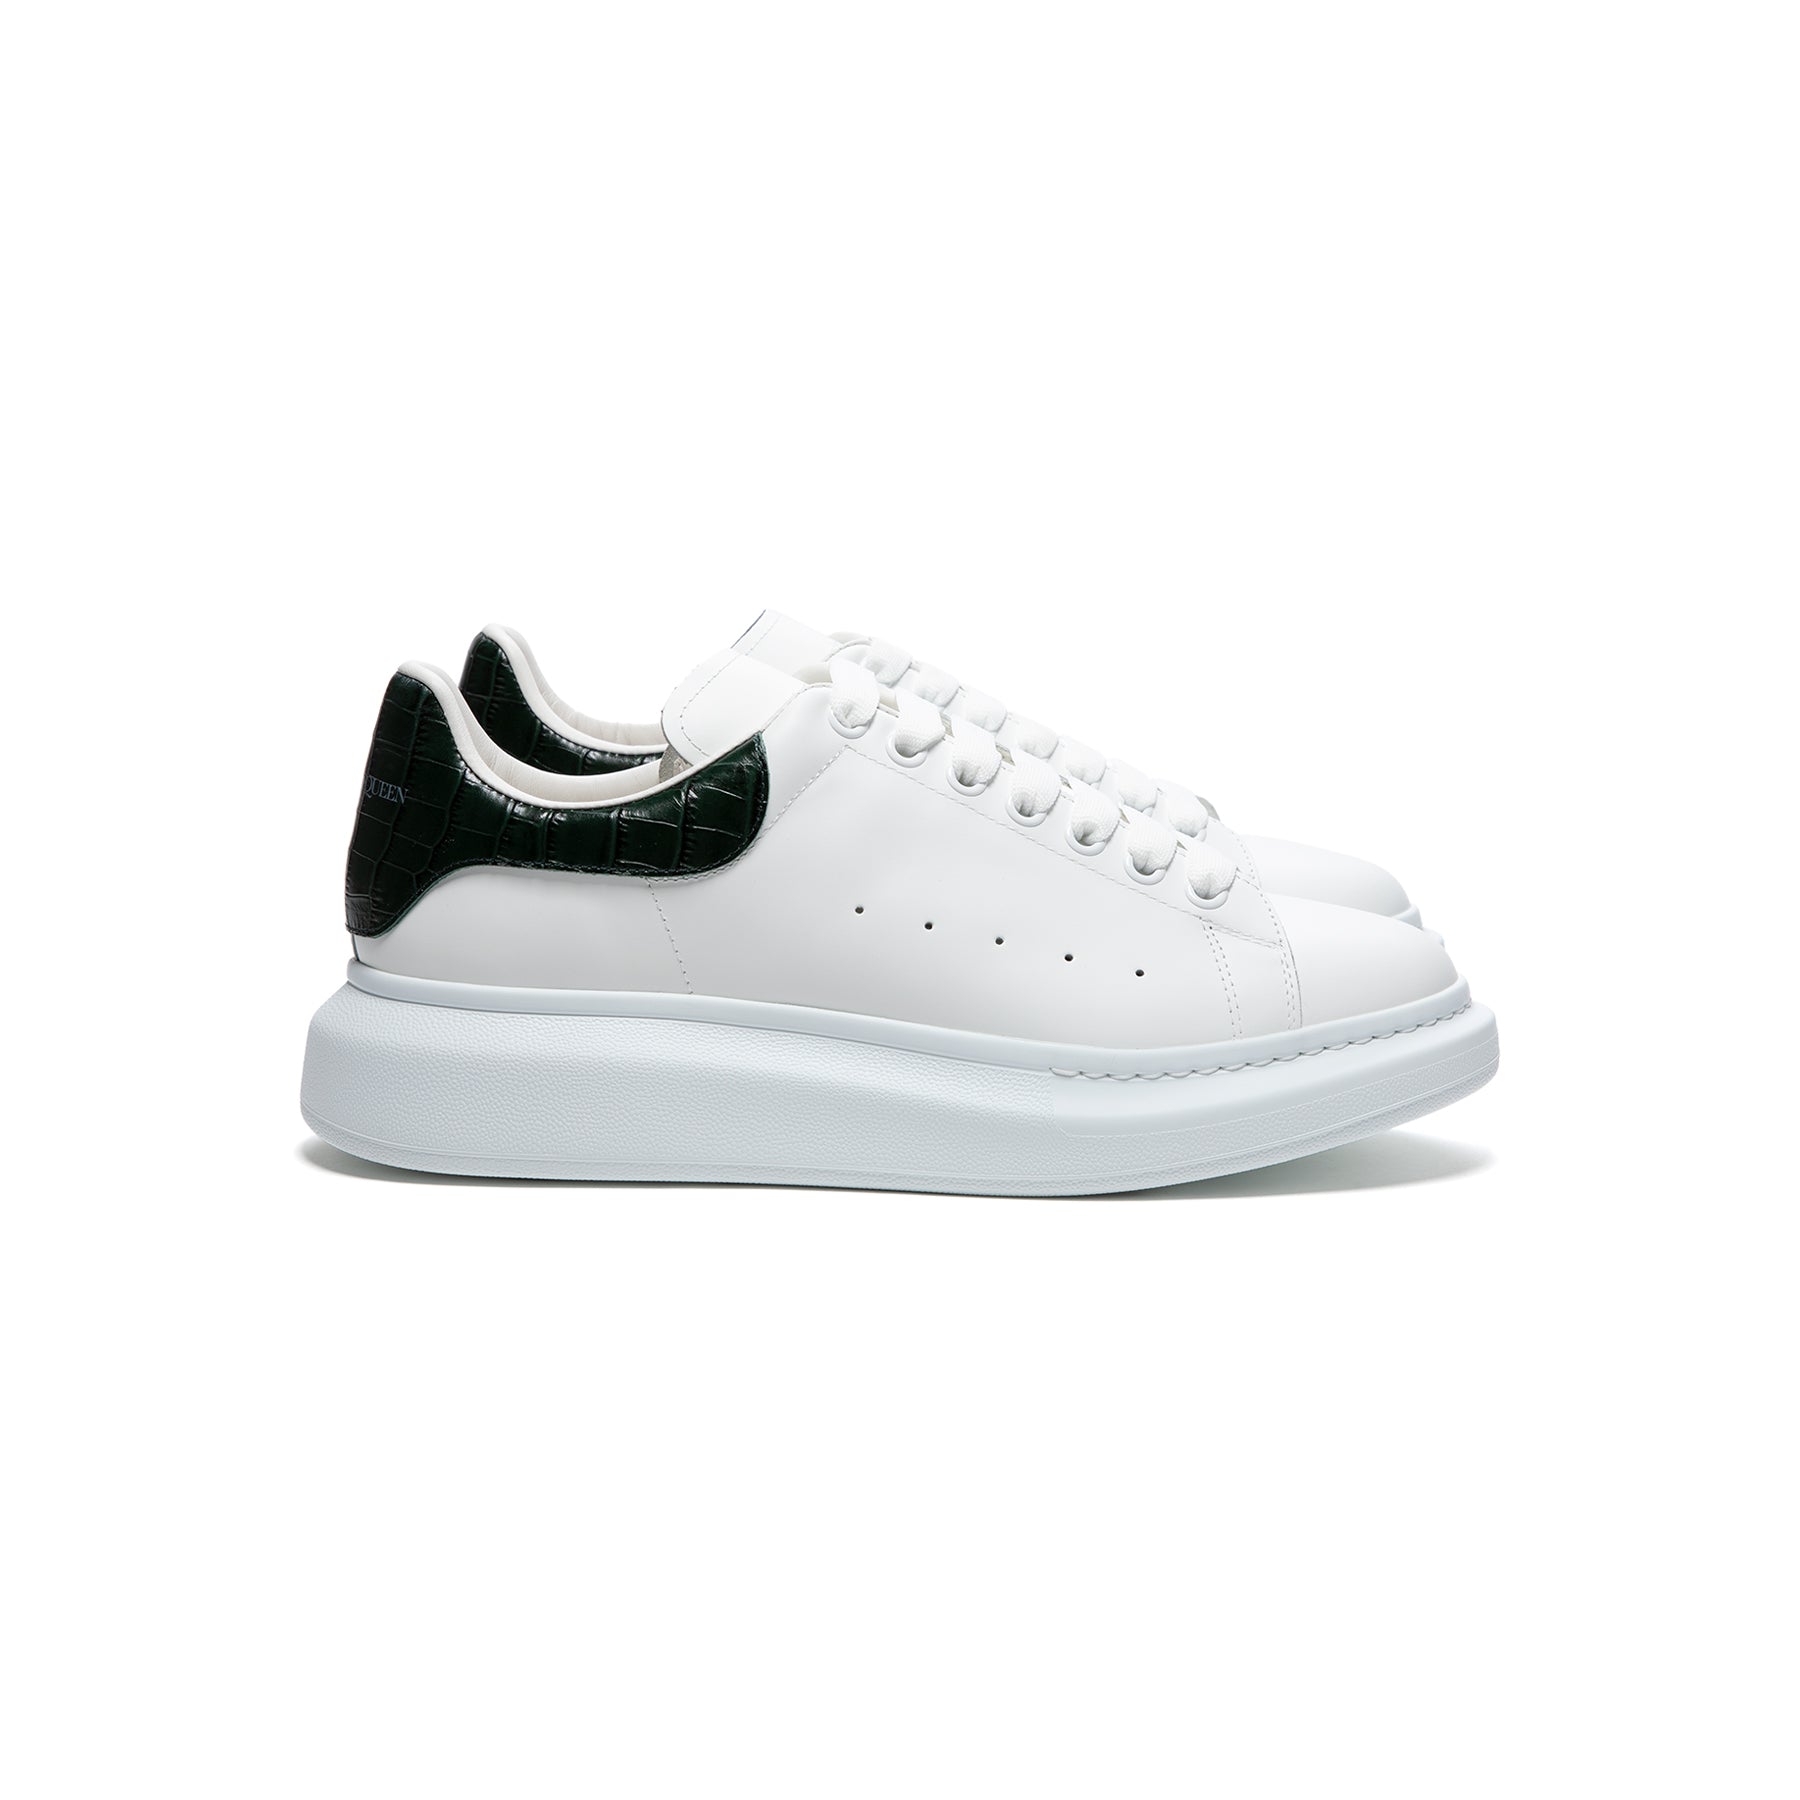 Oversized Sneaker in Black/White